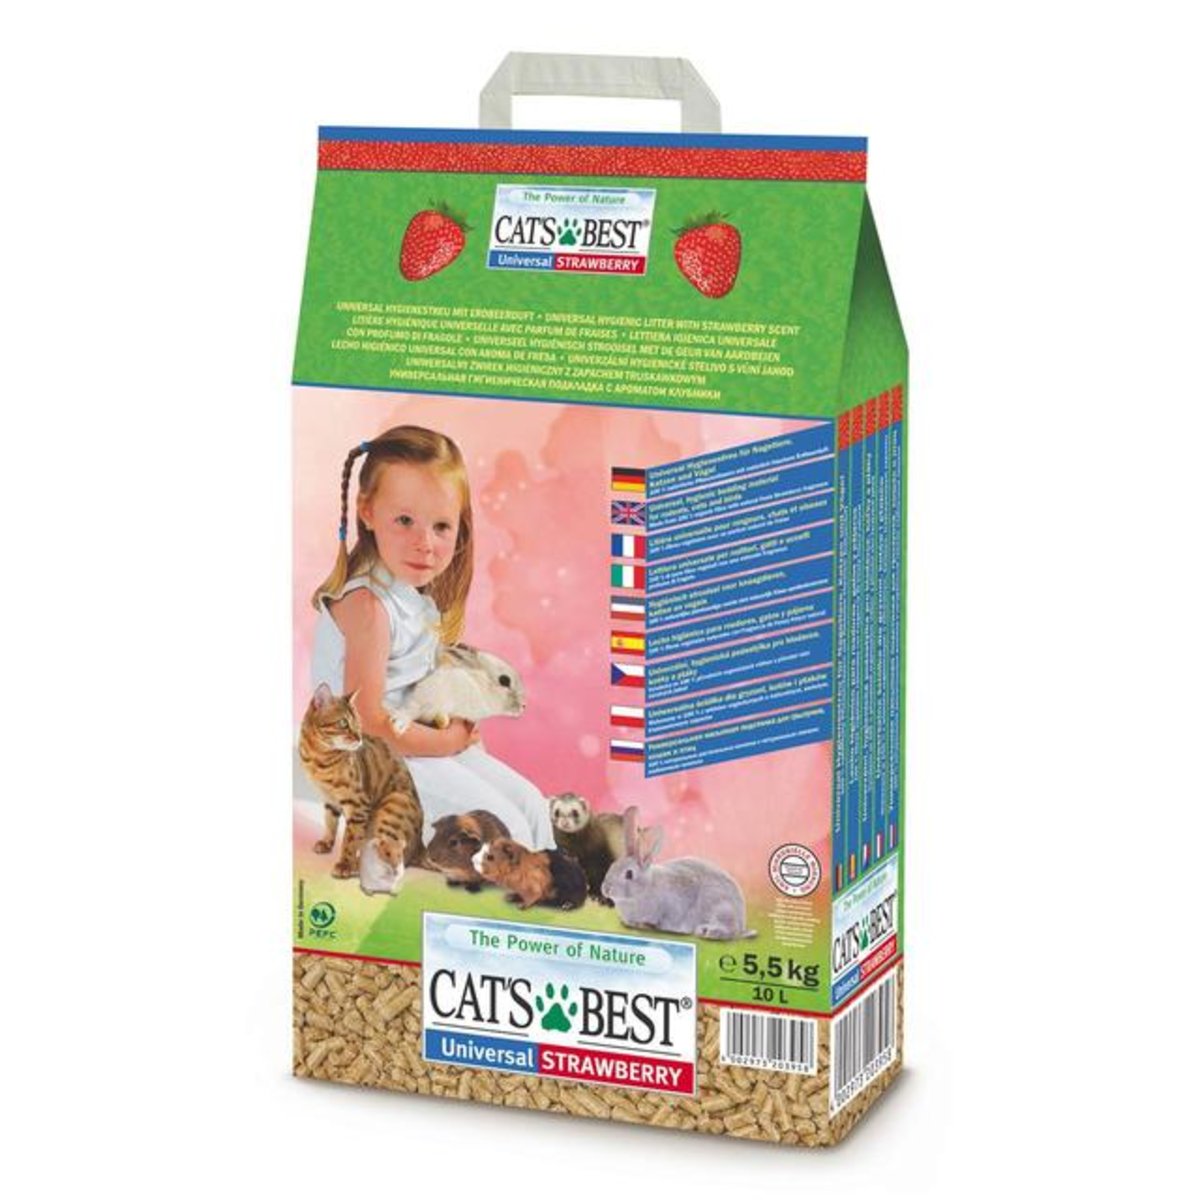 Universal Strawberry наполнитель для туалетов домашних животных, древесный, впитывающий, с запахом клубники, Cat's Best от зоомагазина Дино Зоо